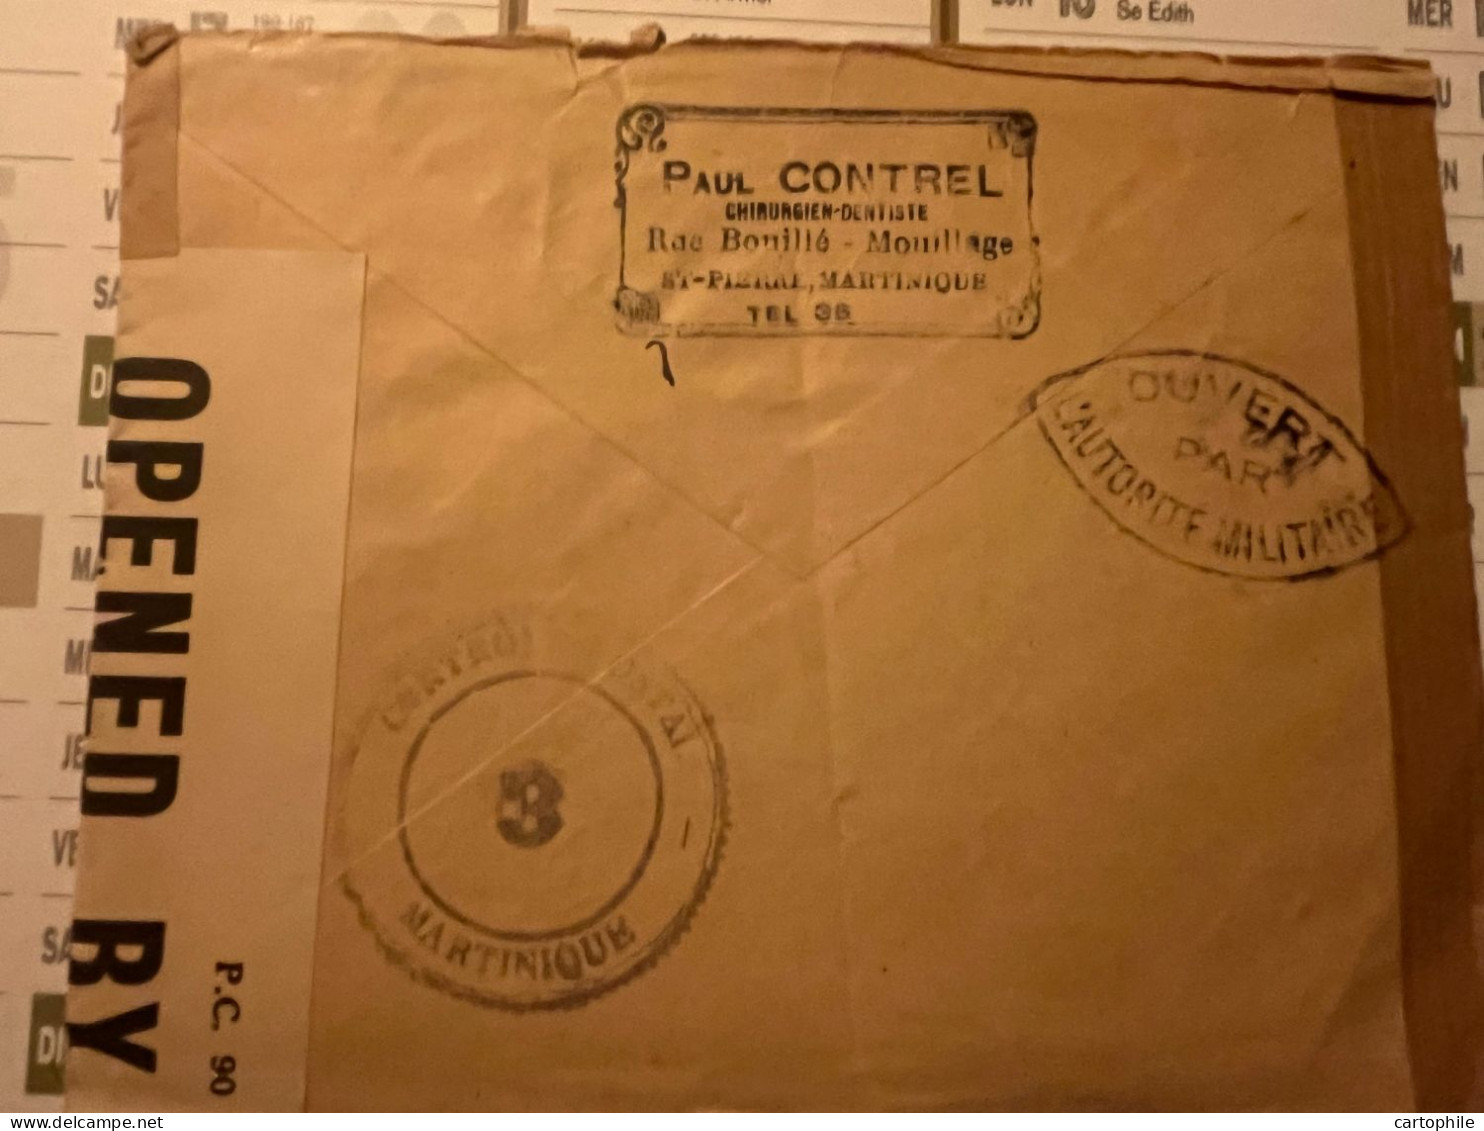 LSC Lettre De Martinique Vers 1945 Avec Cachet De Controle Postal + Ouvert Par Autorité Militaire Français Et Américain - Covers & Documents